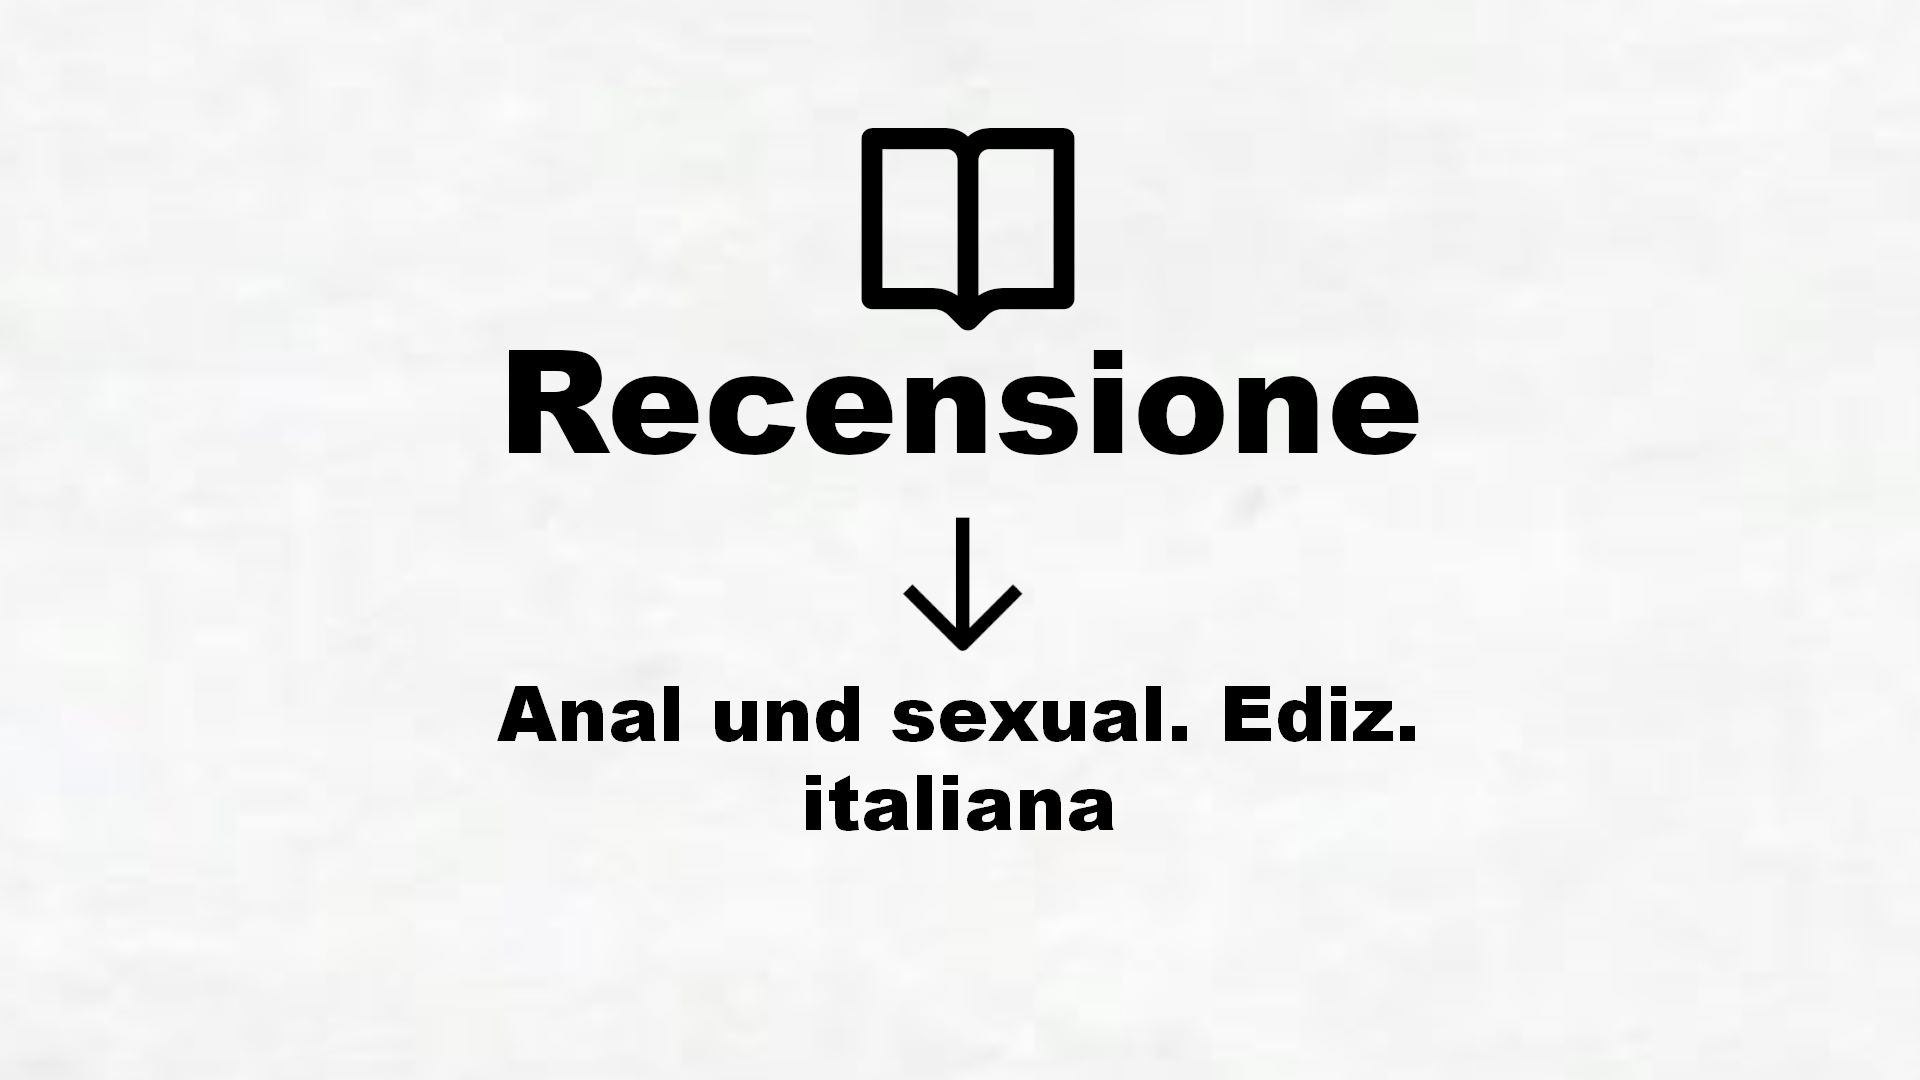 Anal und sexual. Ediz. italiana – Recensione Libro